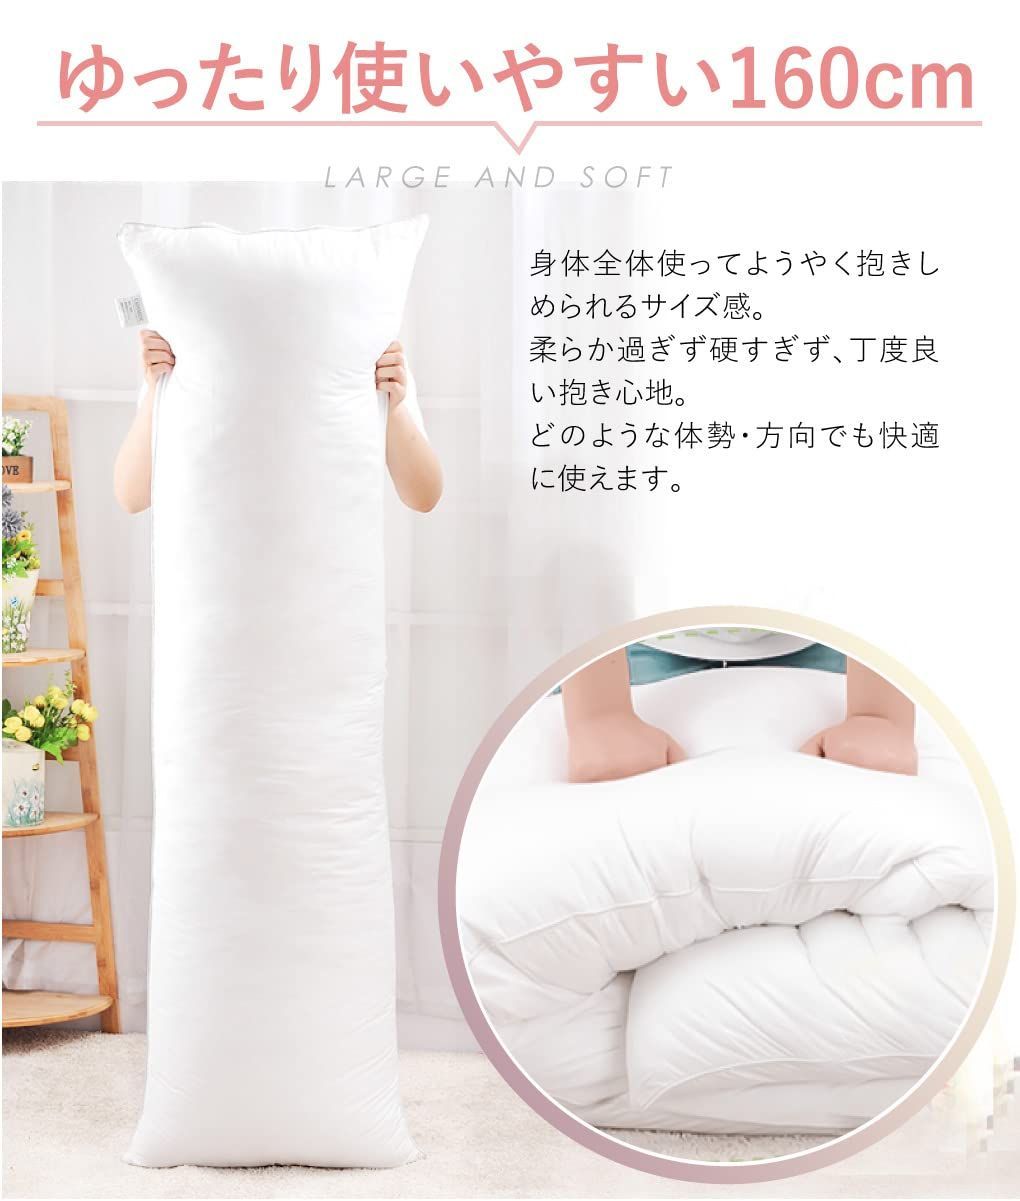 【色: ホワイト】抱き枕本体150x50cm だきまくら大きいサイズ 等身大抱き